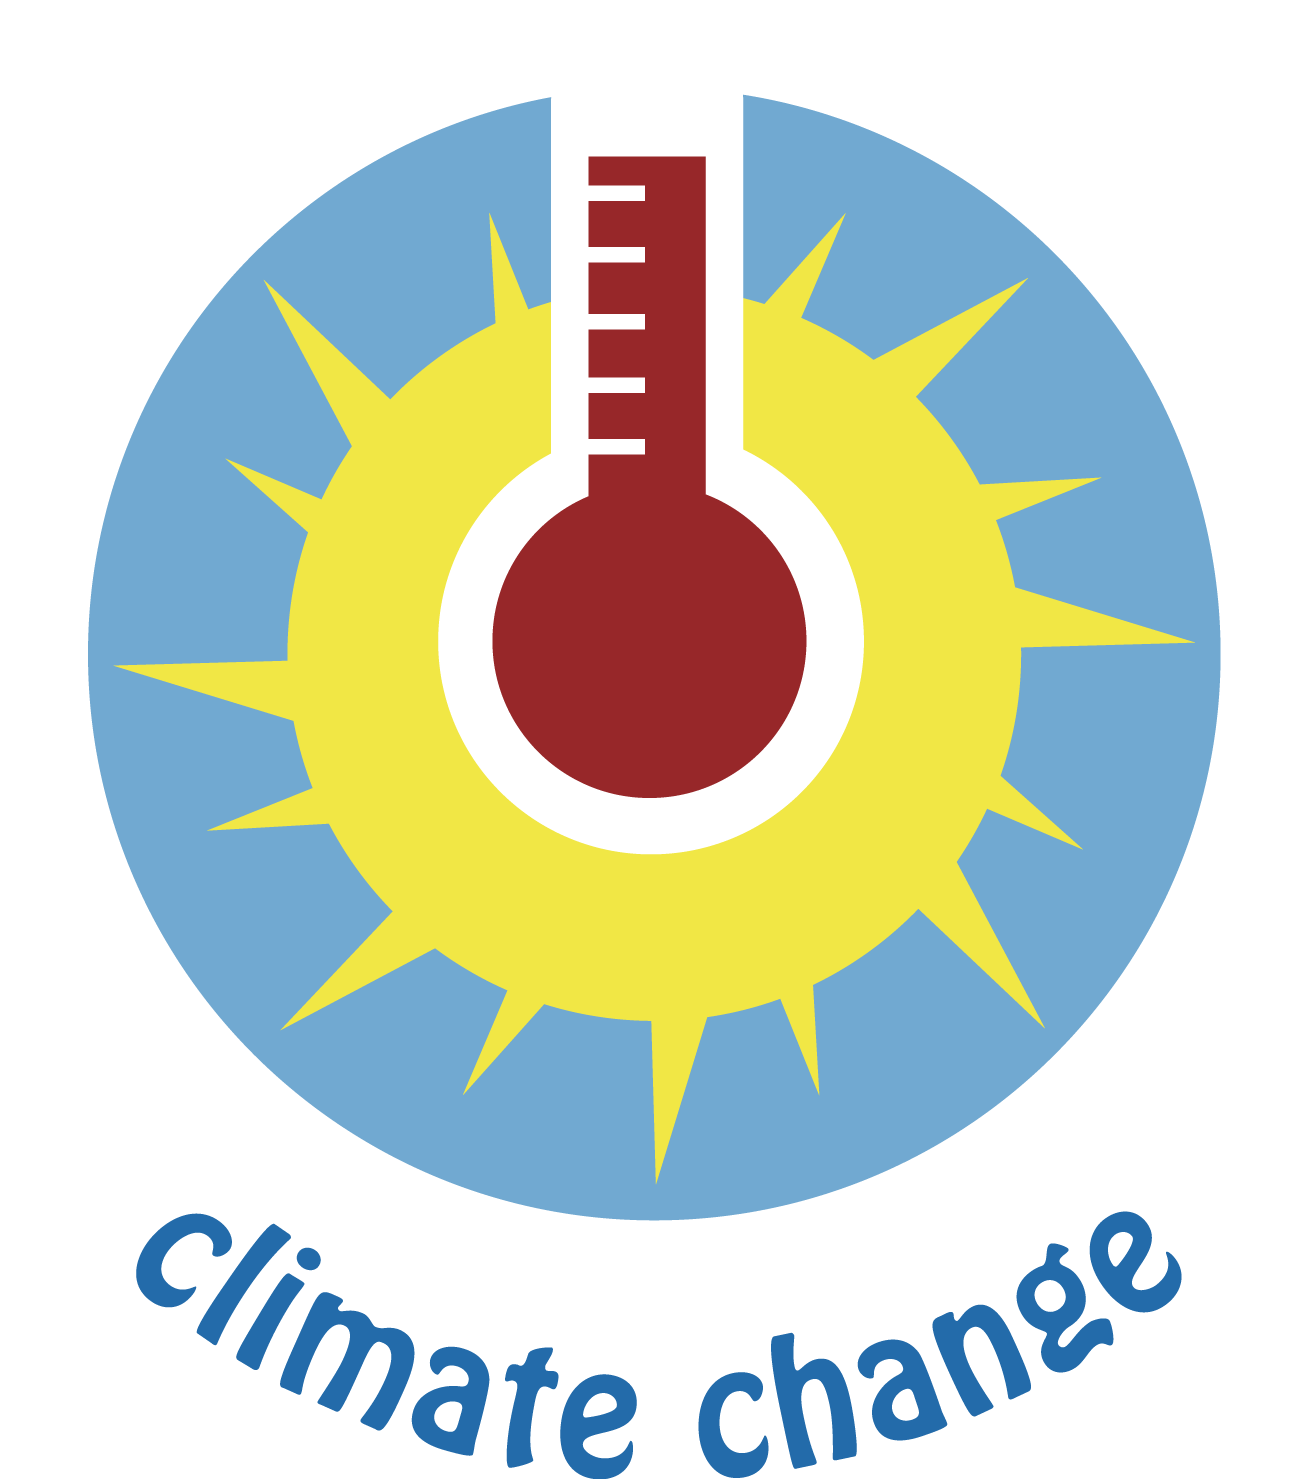 ไฟล์ PNG การเปลี่ยนแปลงสภาพภูมิอากาศ